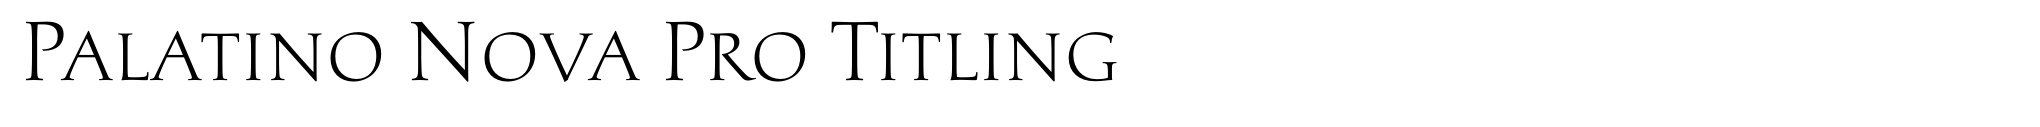 Palatino Nova Pro Titling image